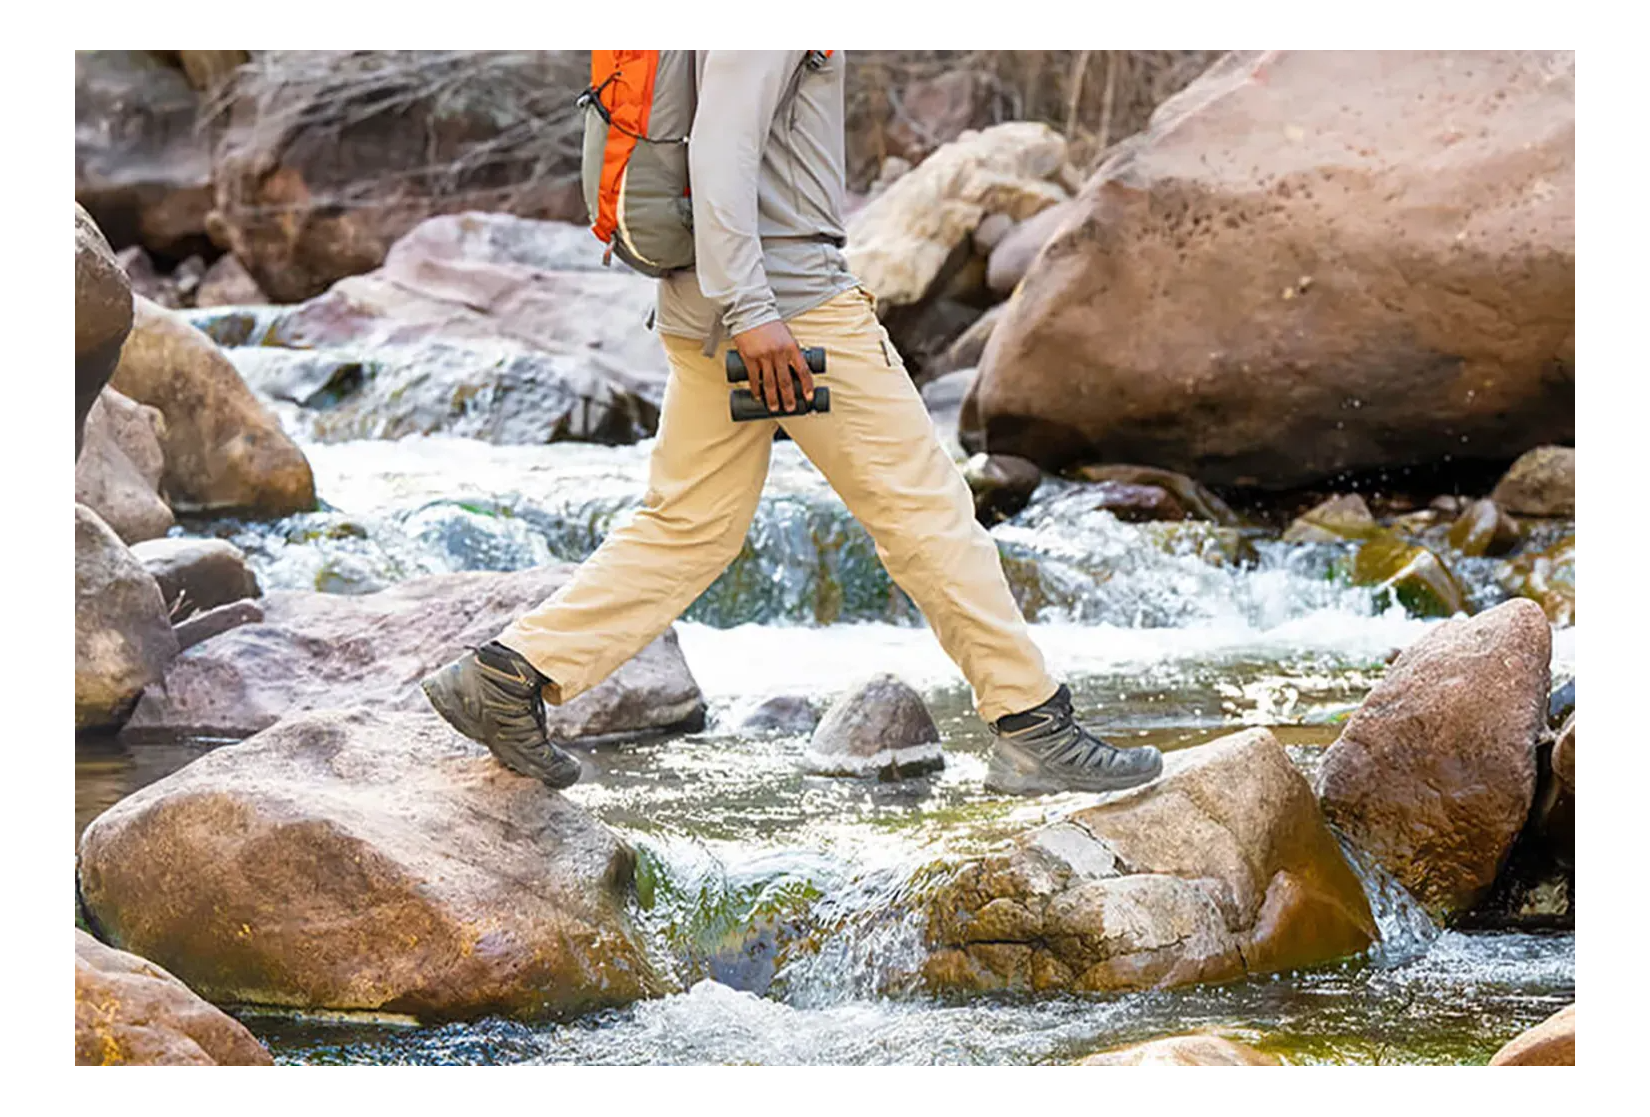 A hiker walking across a rocky stream with Nikon binoculars